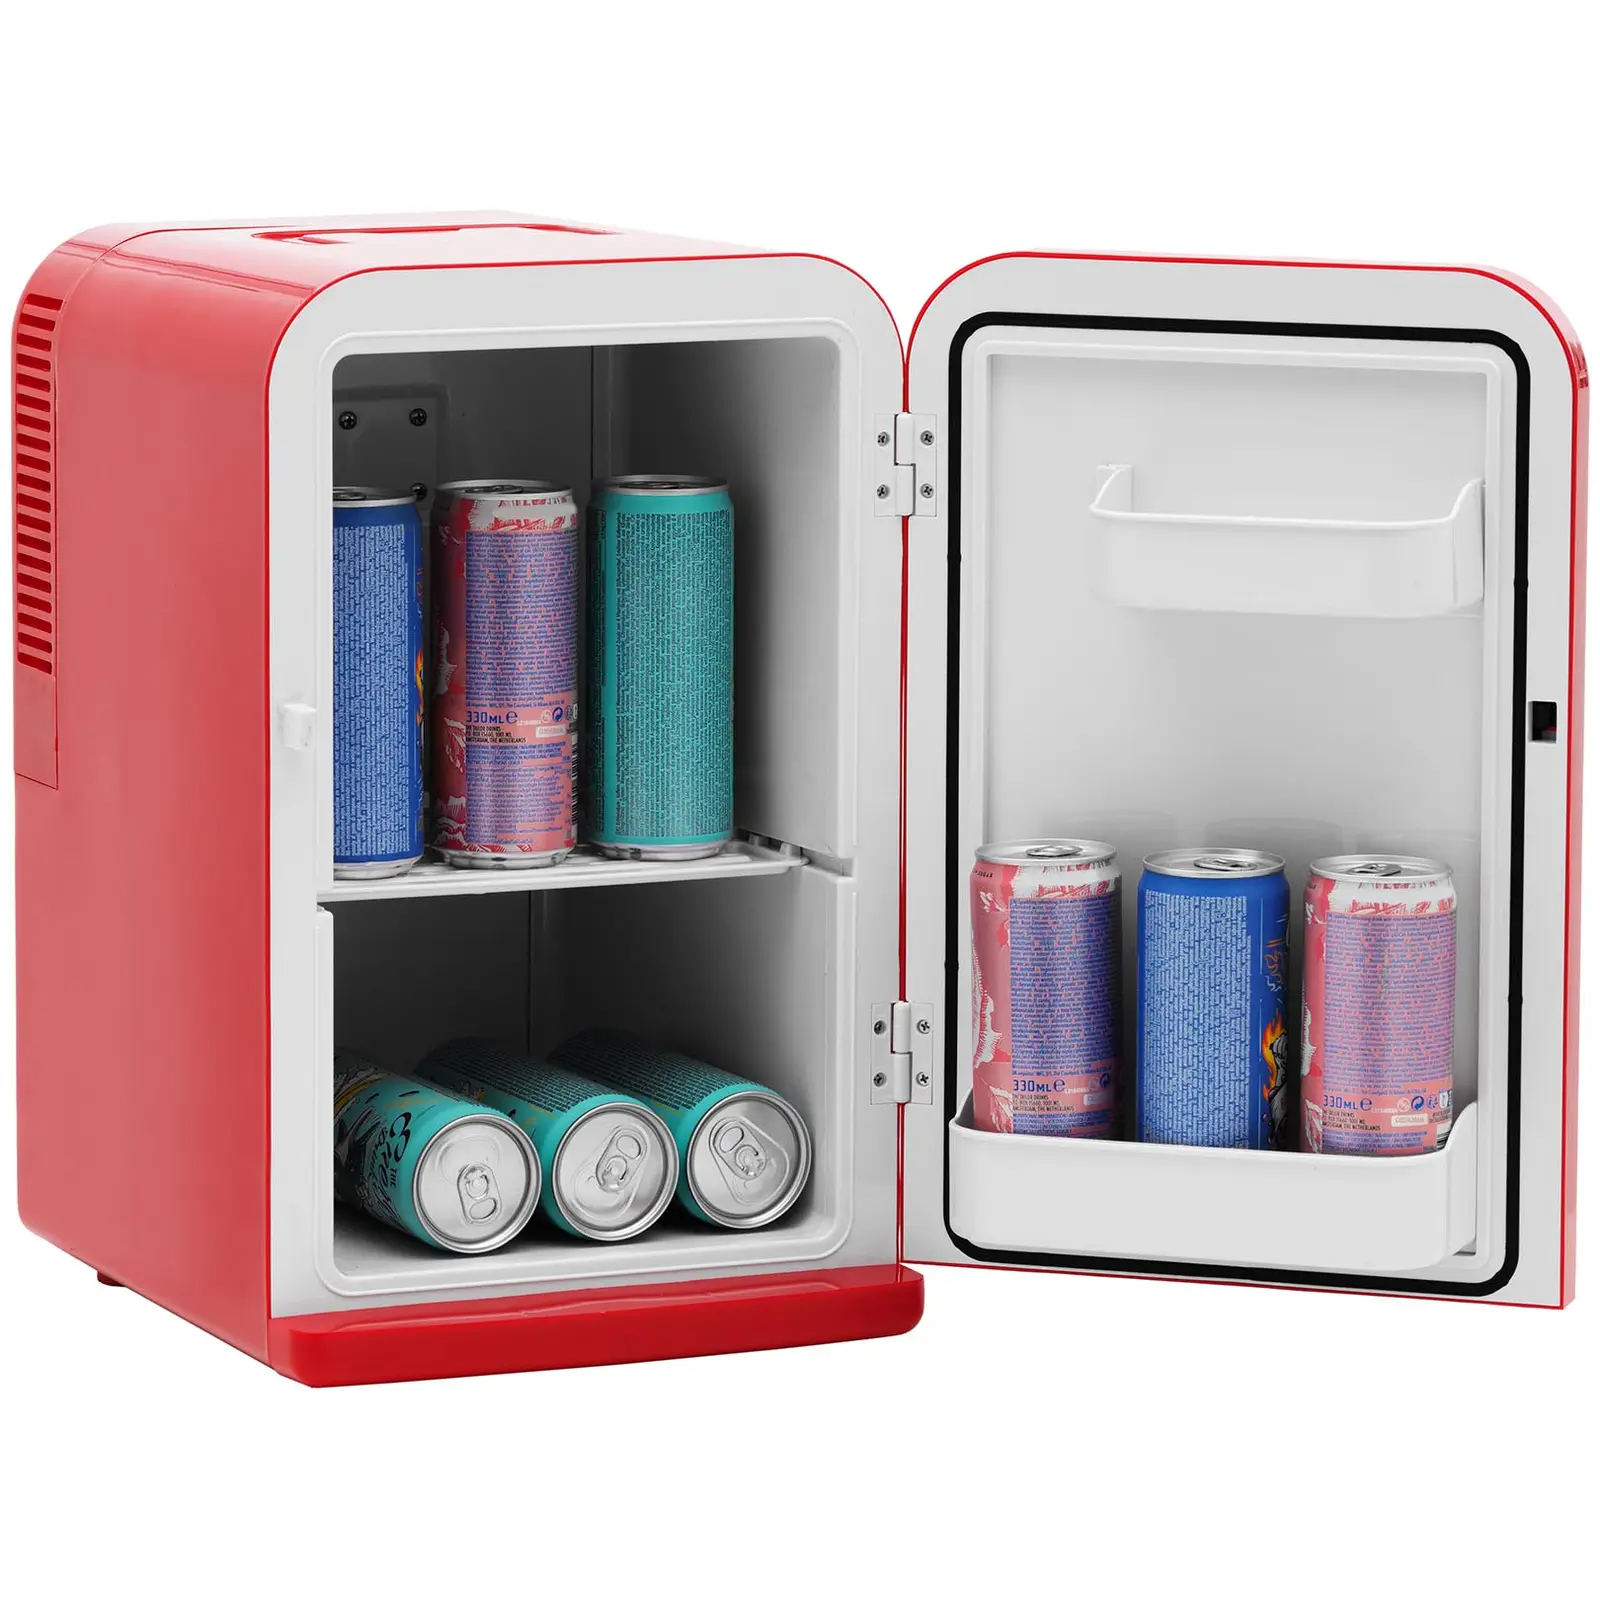 Ocasión Mini refrigerador 12 V / 230 V - aparato 2 en 1 con función de mantenimiento de calor - 15 L - rojo